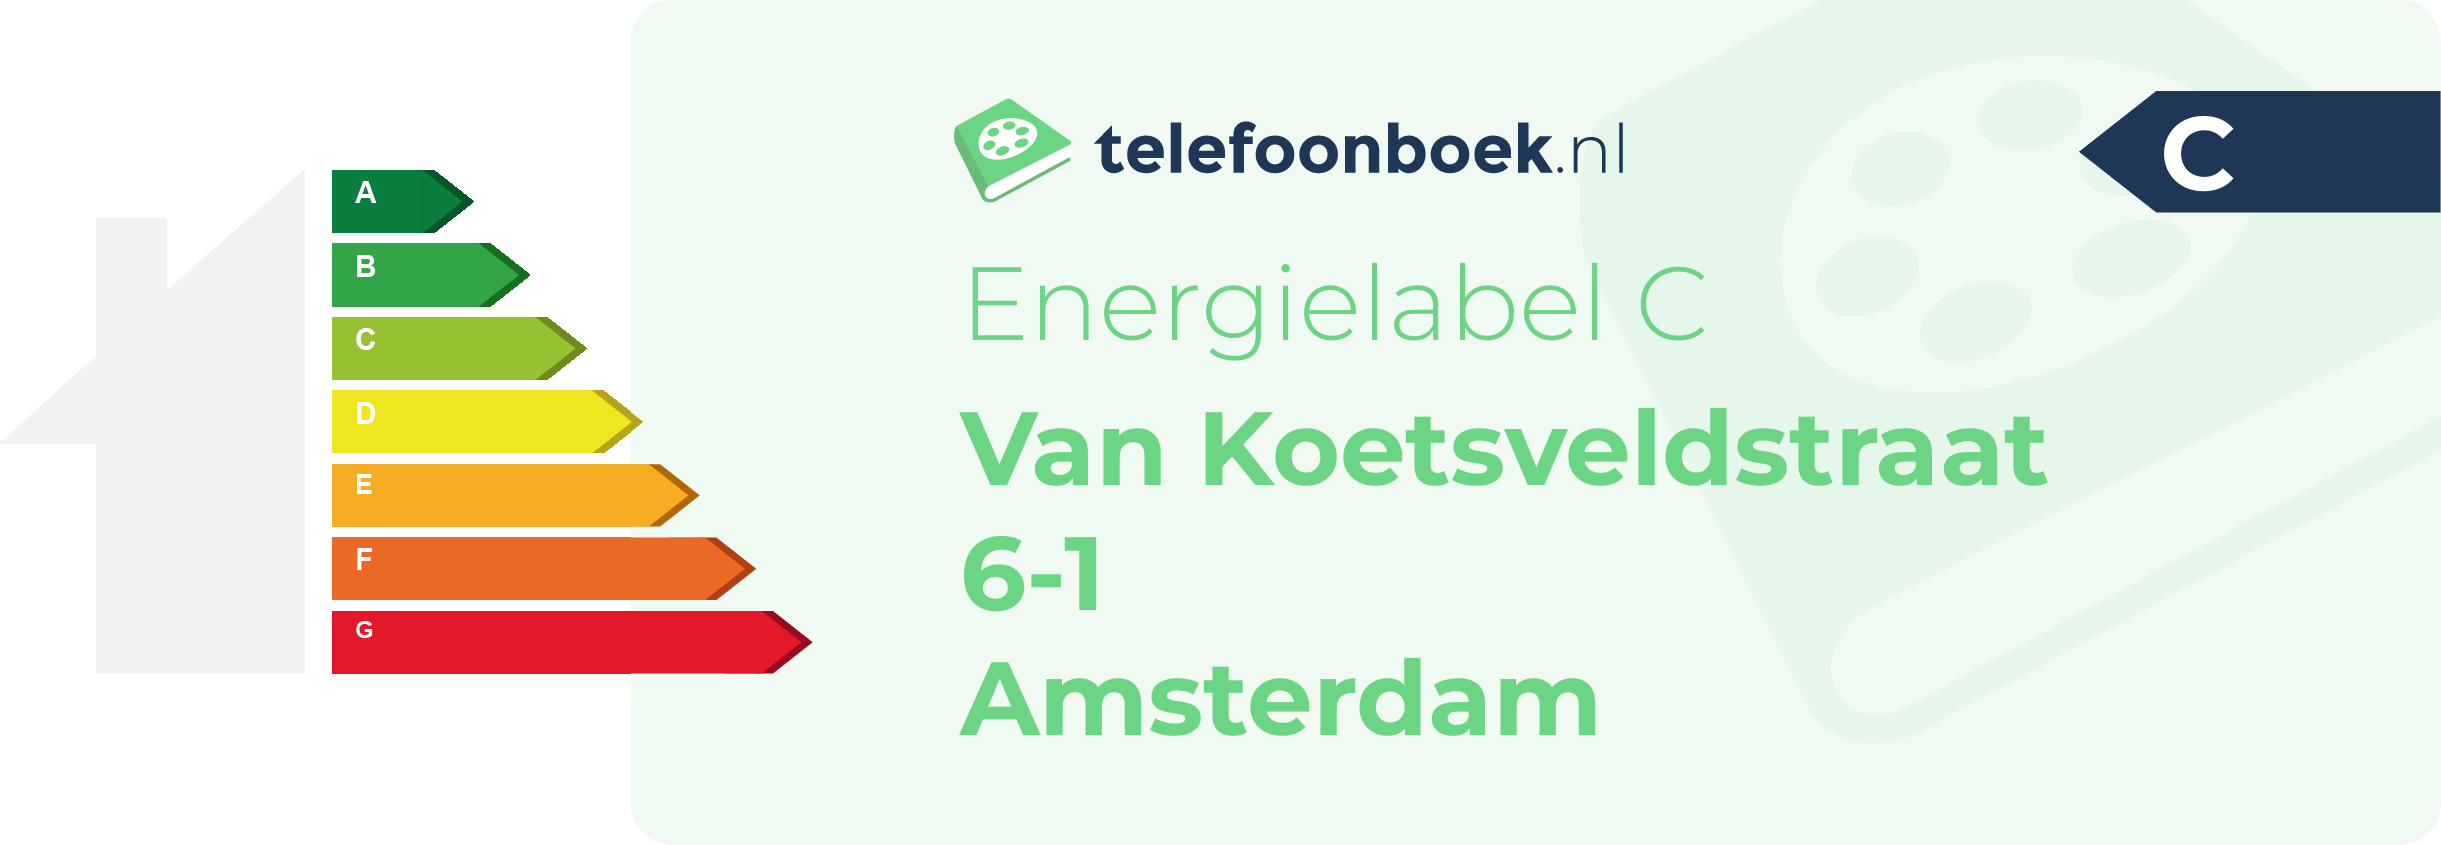 Energielabel Van Koetsveldstraat 6-1 Amsterdam